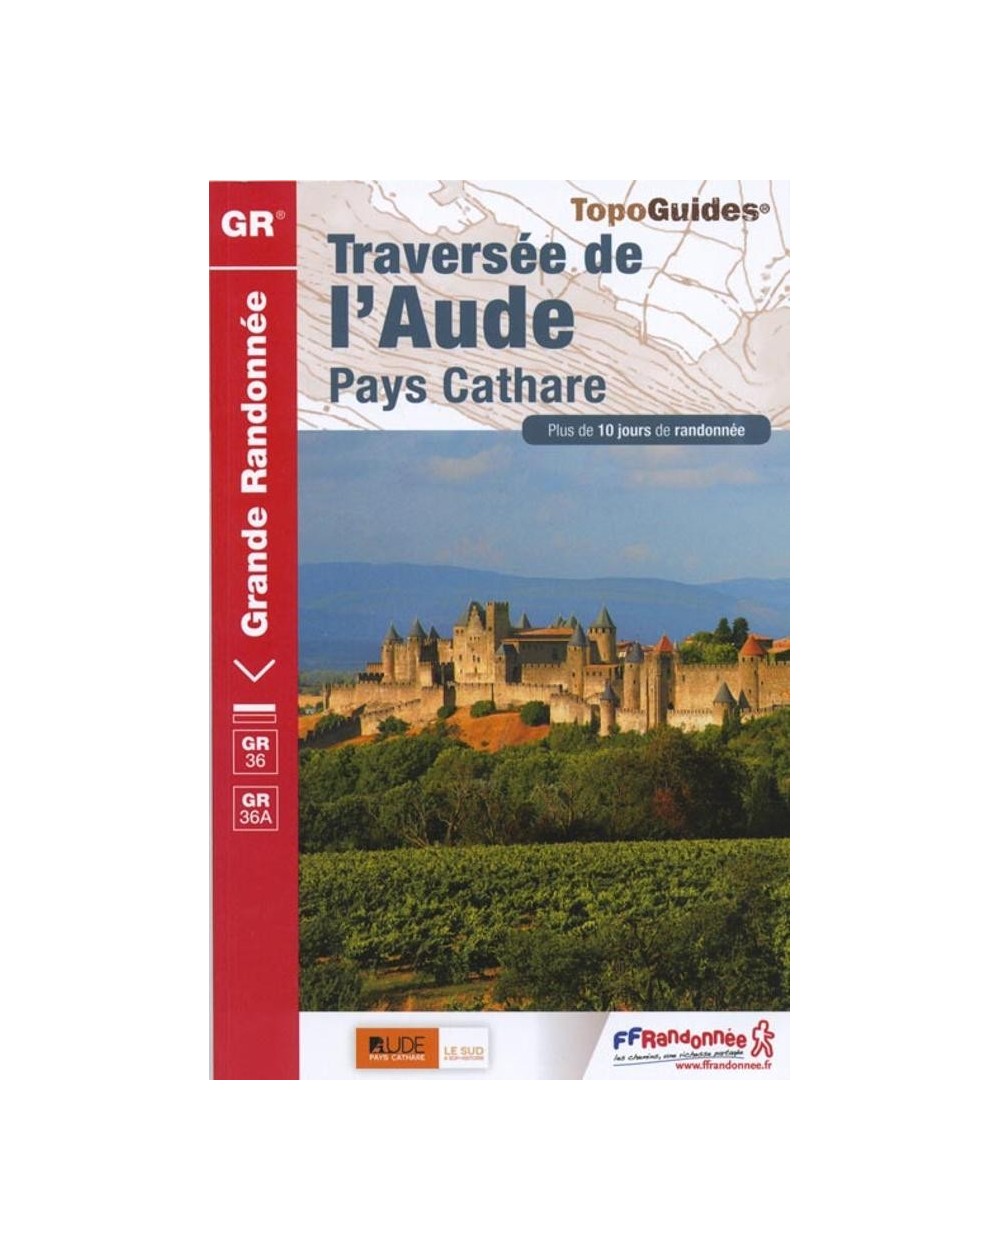 GR36 - Traversée de l'Aude - Pays Cathare | Topoguide FFRP